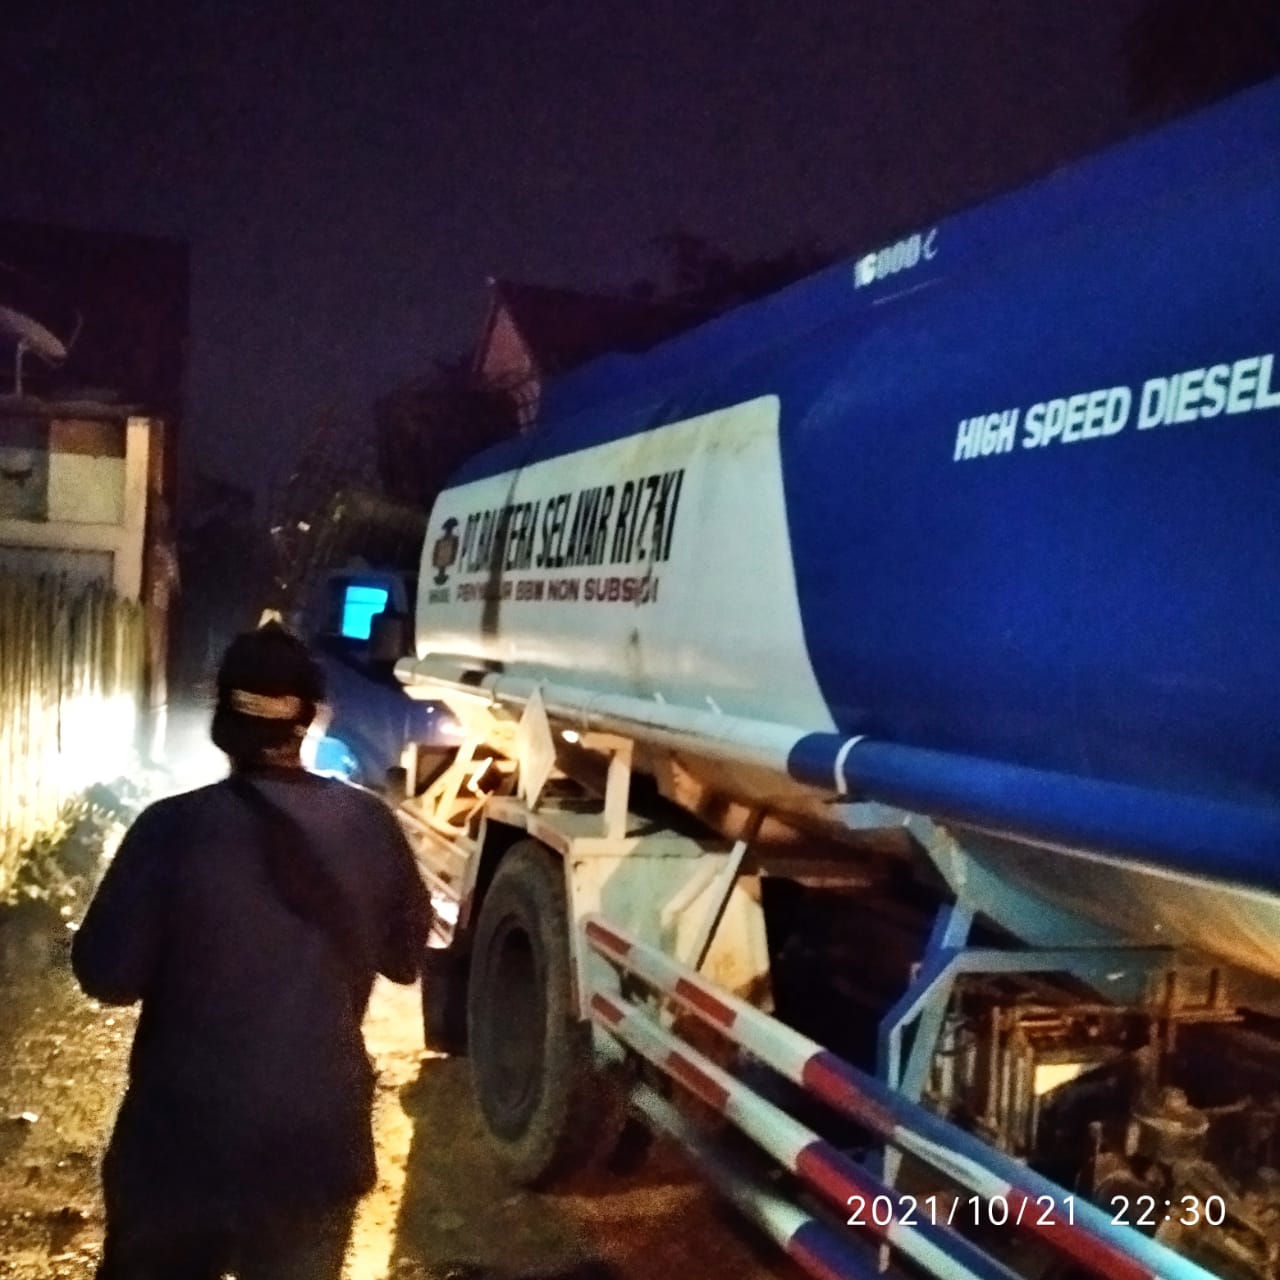 Proses pengangkutan barang bukti minyak ilegal hasil razia dari salah satu gudang di RT 31 Lingkar Barat 1, Kenali Asam Bawah.